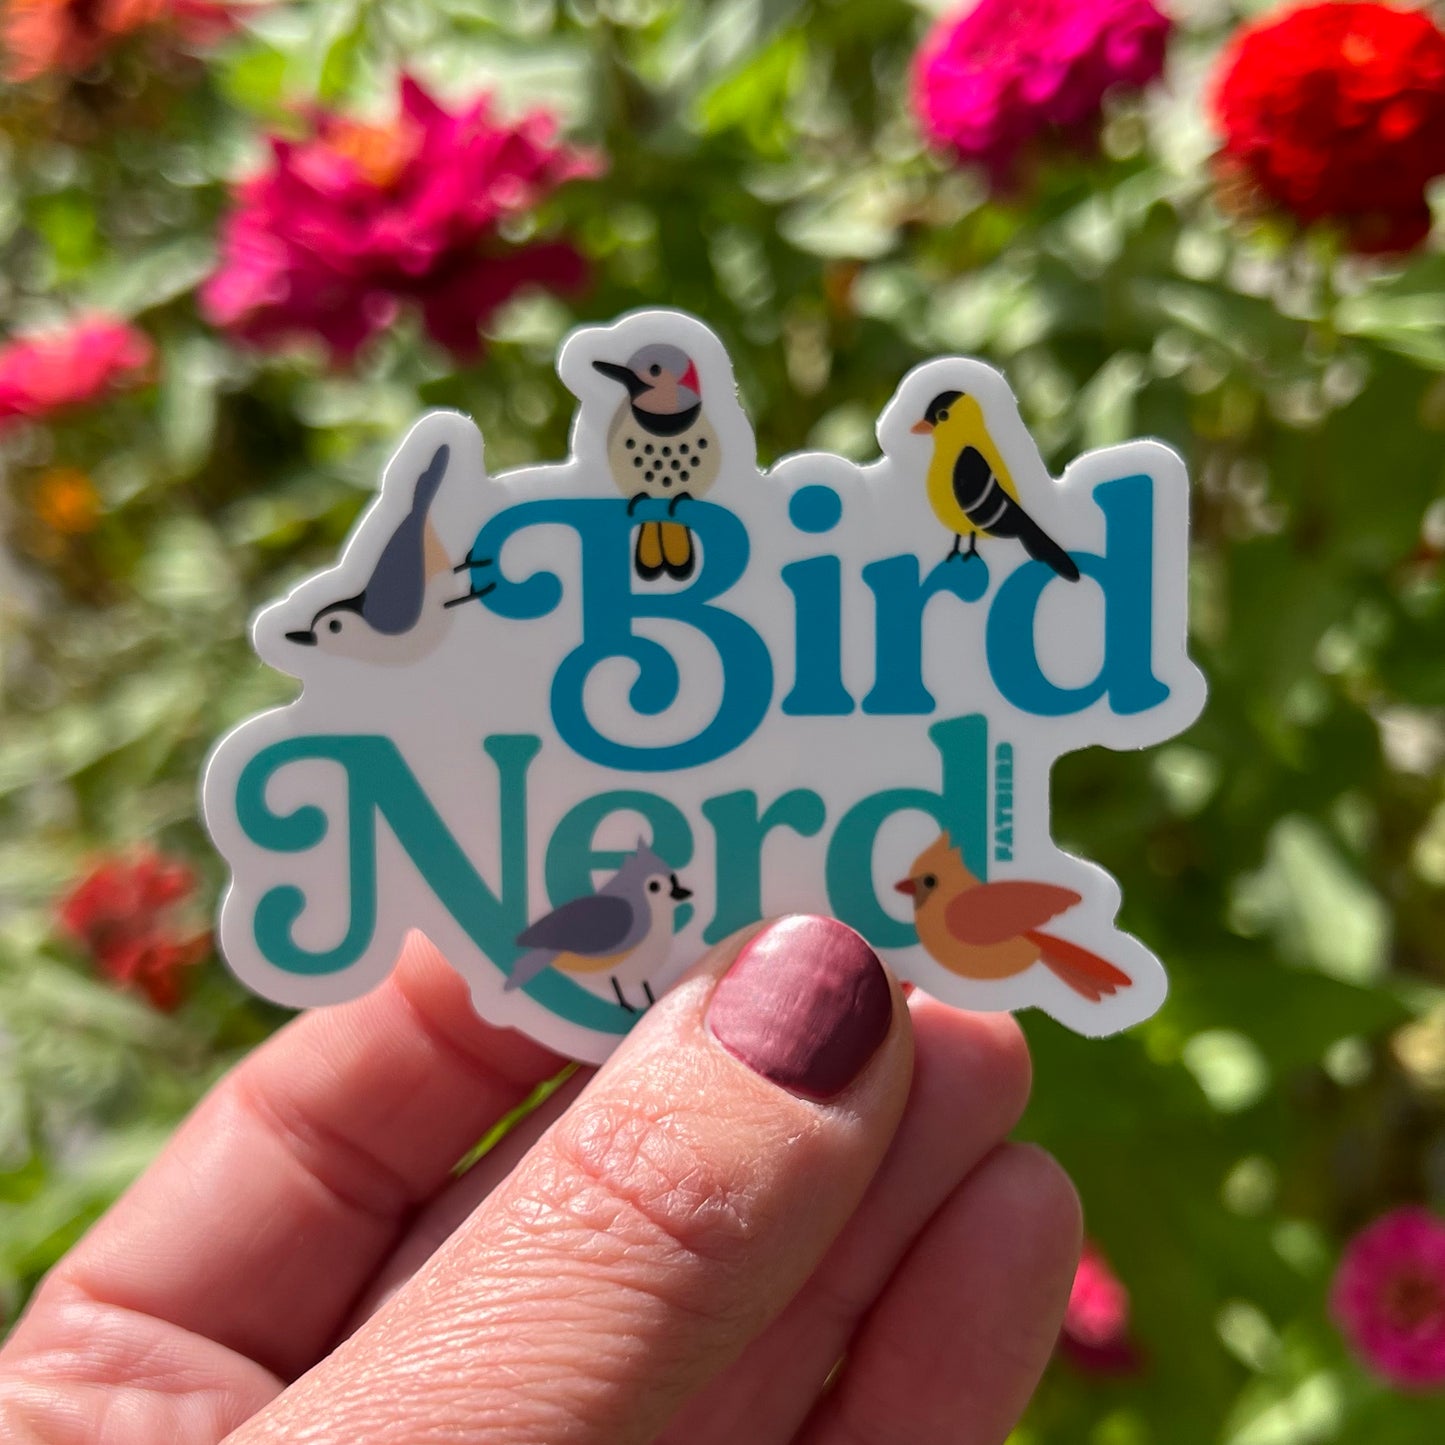 Bird Nerd Vinyl Sticker